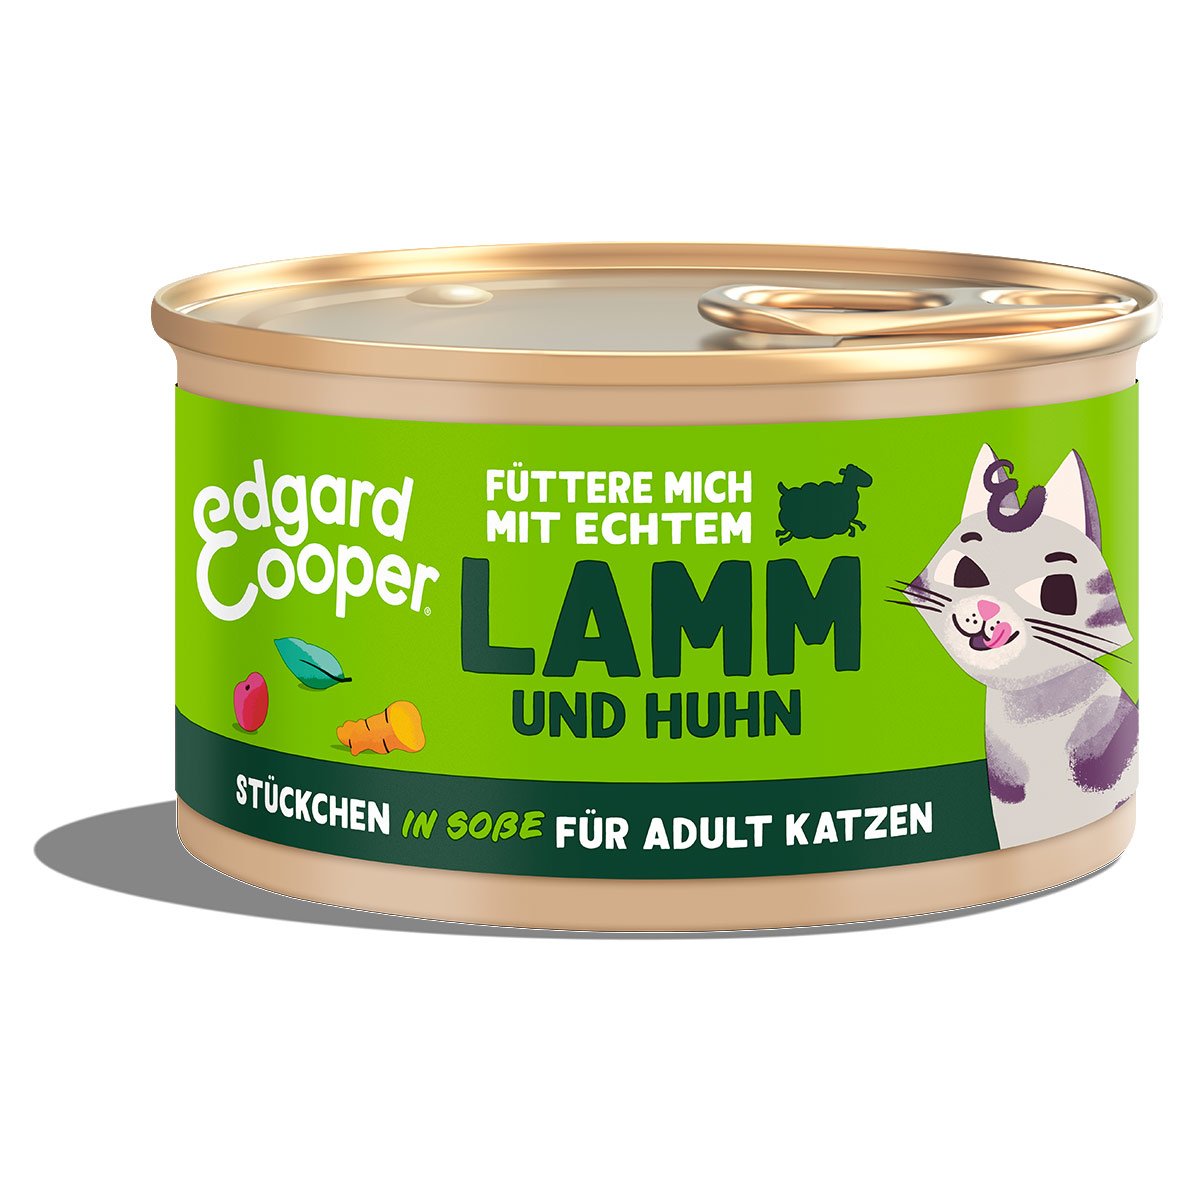 Edgard & Cooper Stückchen in Soße Lamm und Huhn 6x85g von Edgard & Cooper